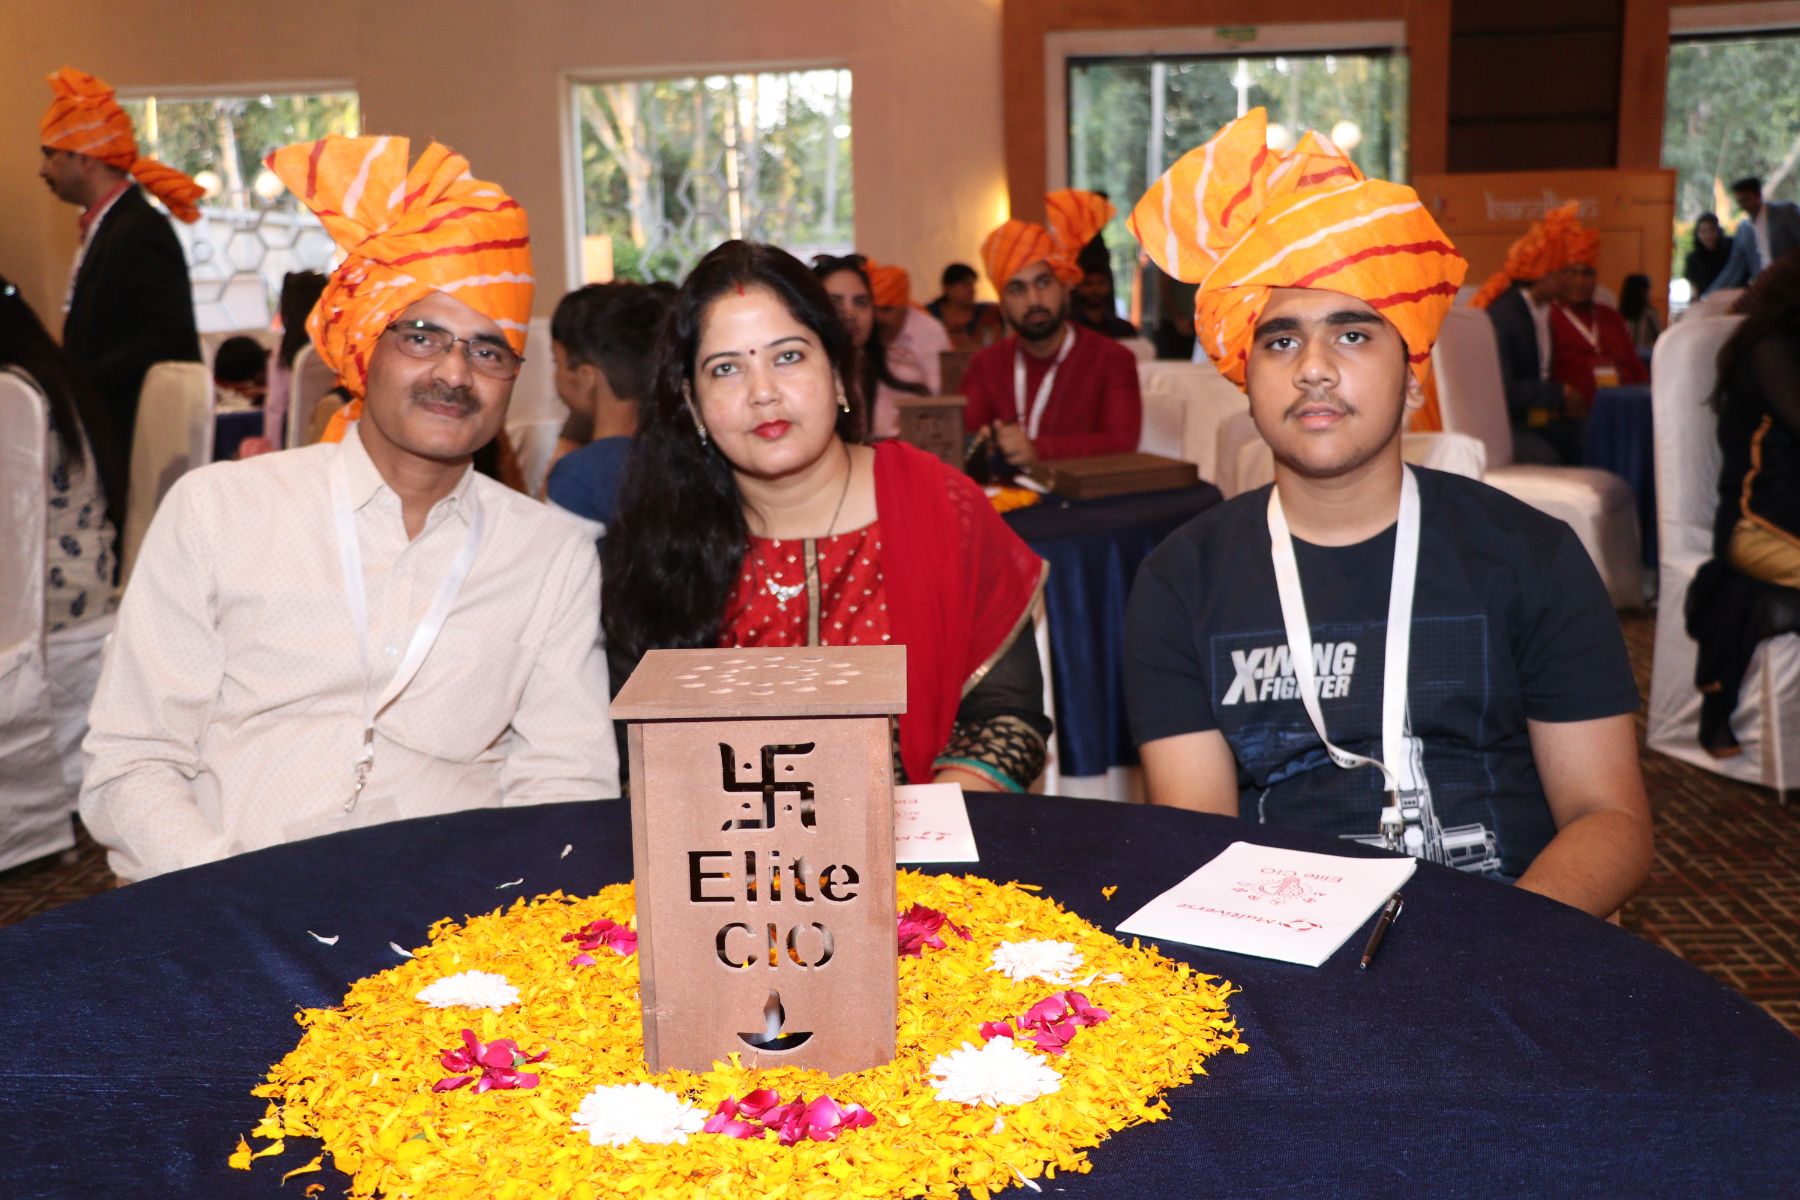 Bandhan- Ek Shaam Elite CIO Pariwar ke Naam